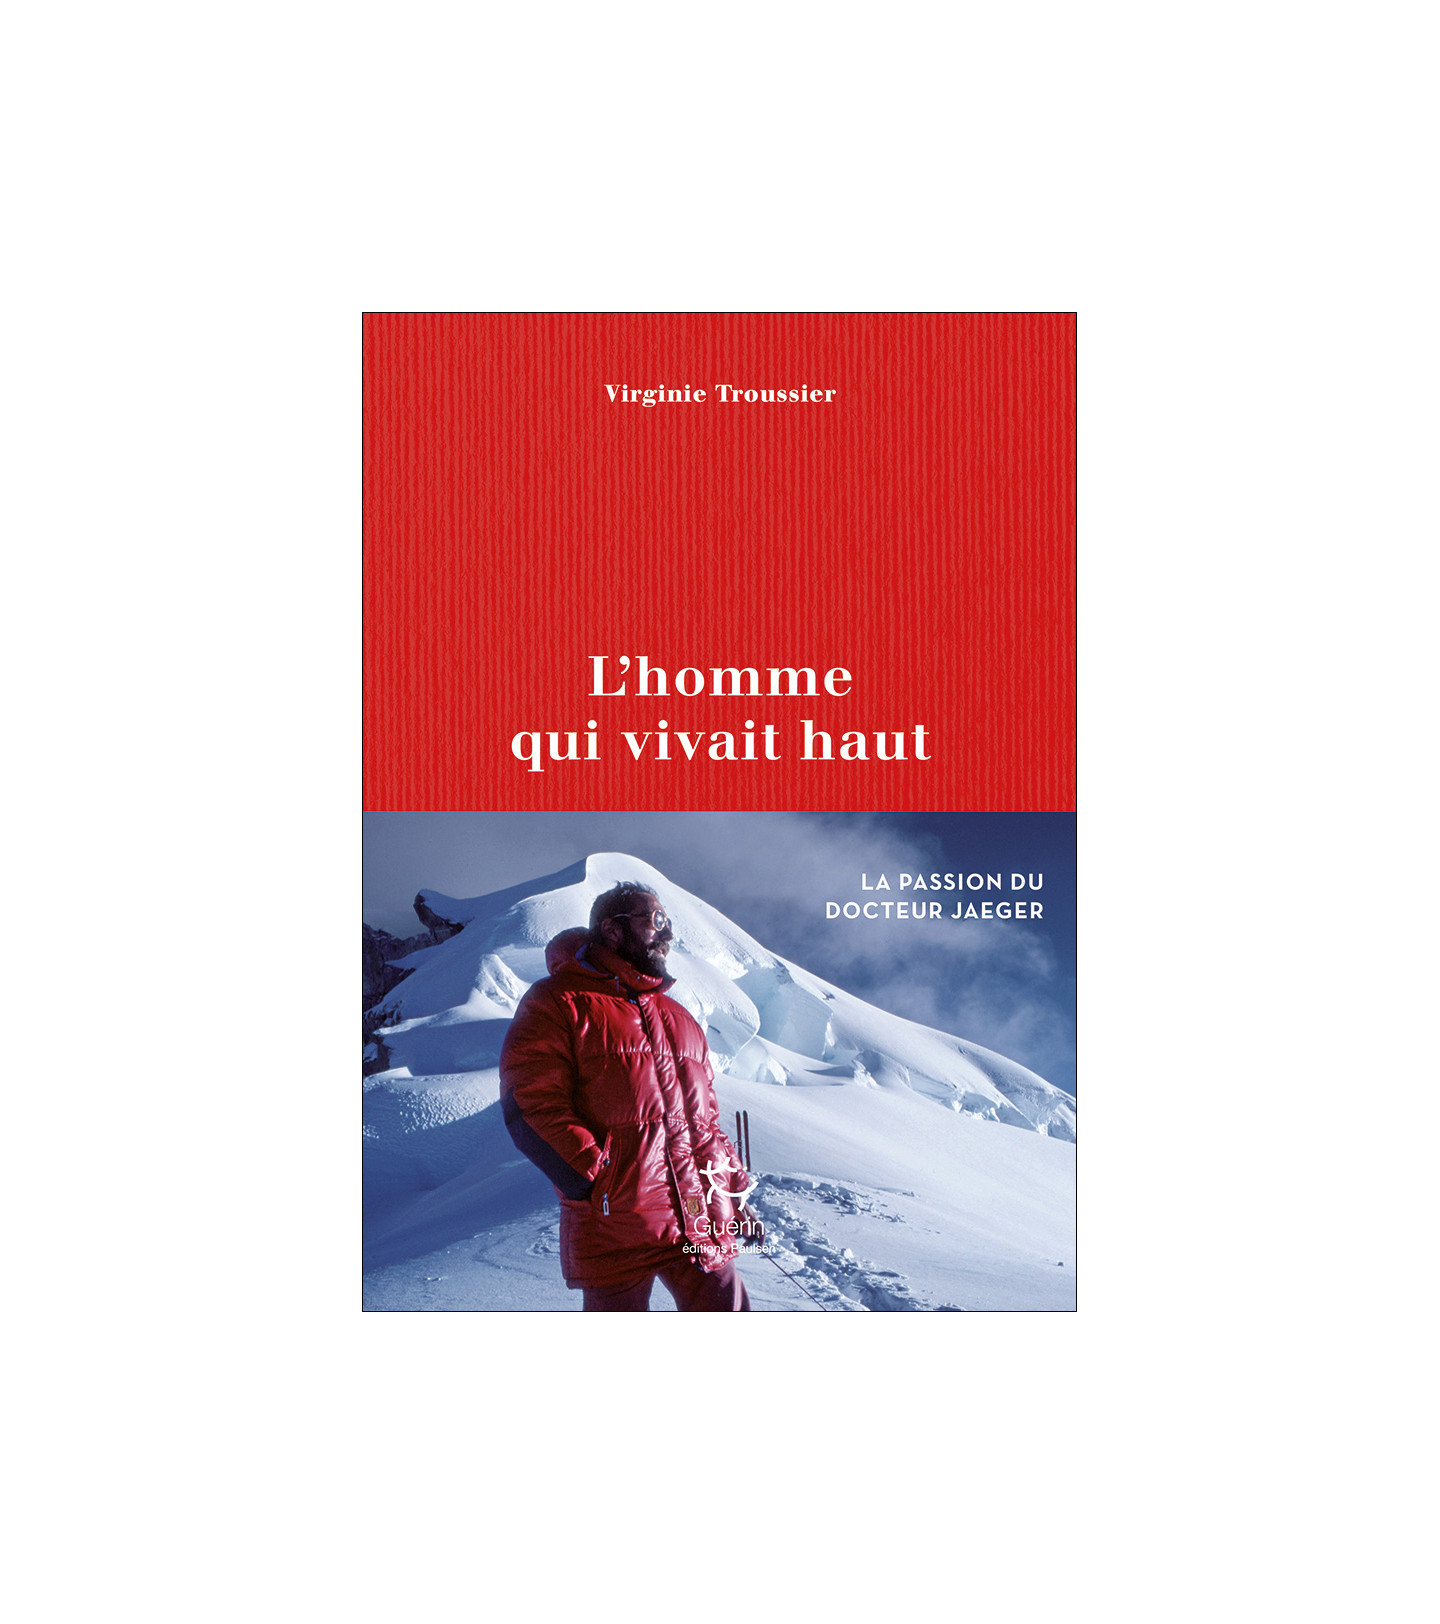 L’homme qui vivait haut | Virginie Troussier | Guérin | Biographie